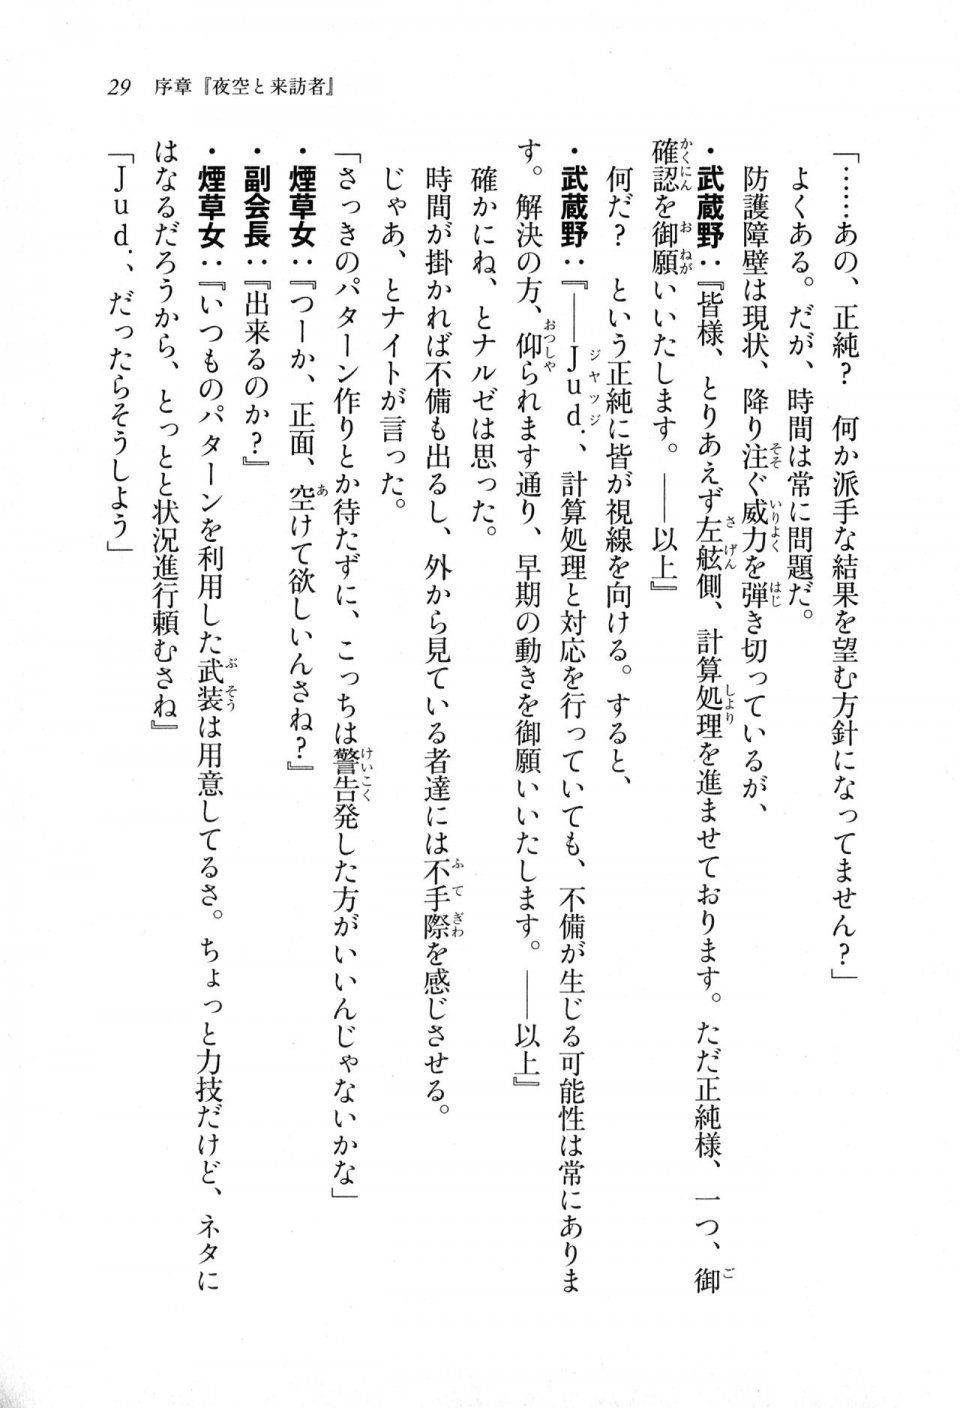 Kyoukai Senjou no Horizon LN Sidestory Vol 1 - Photo #28